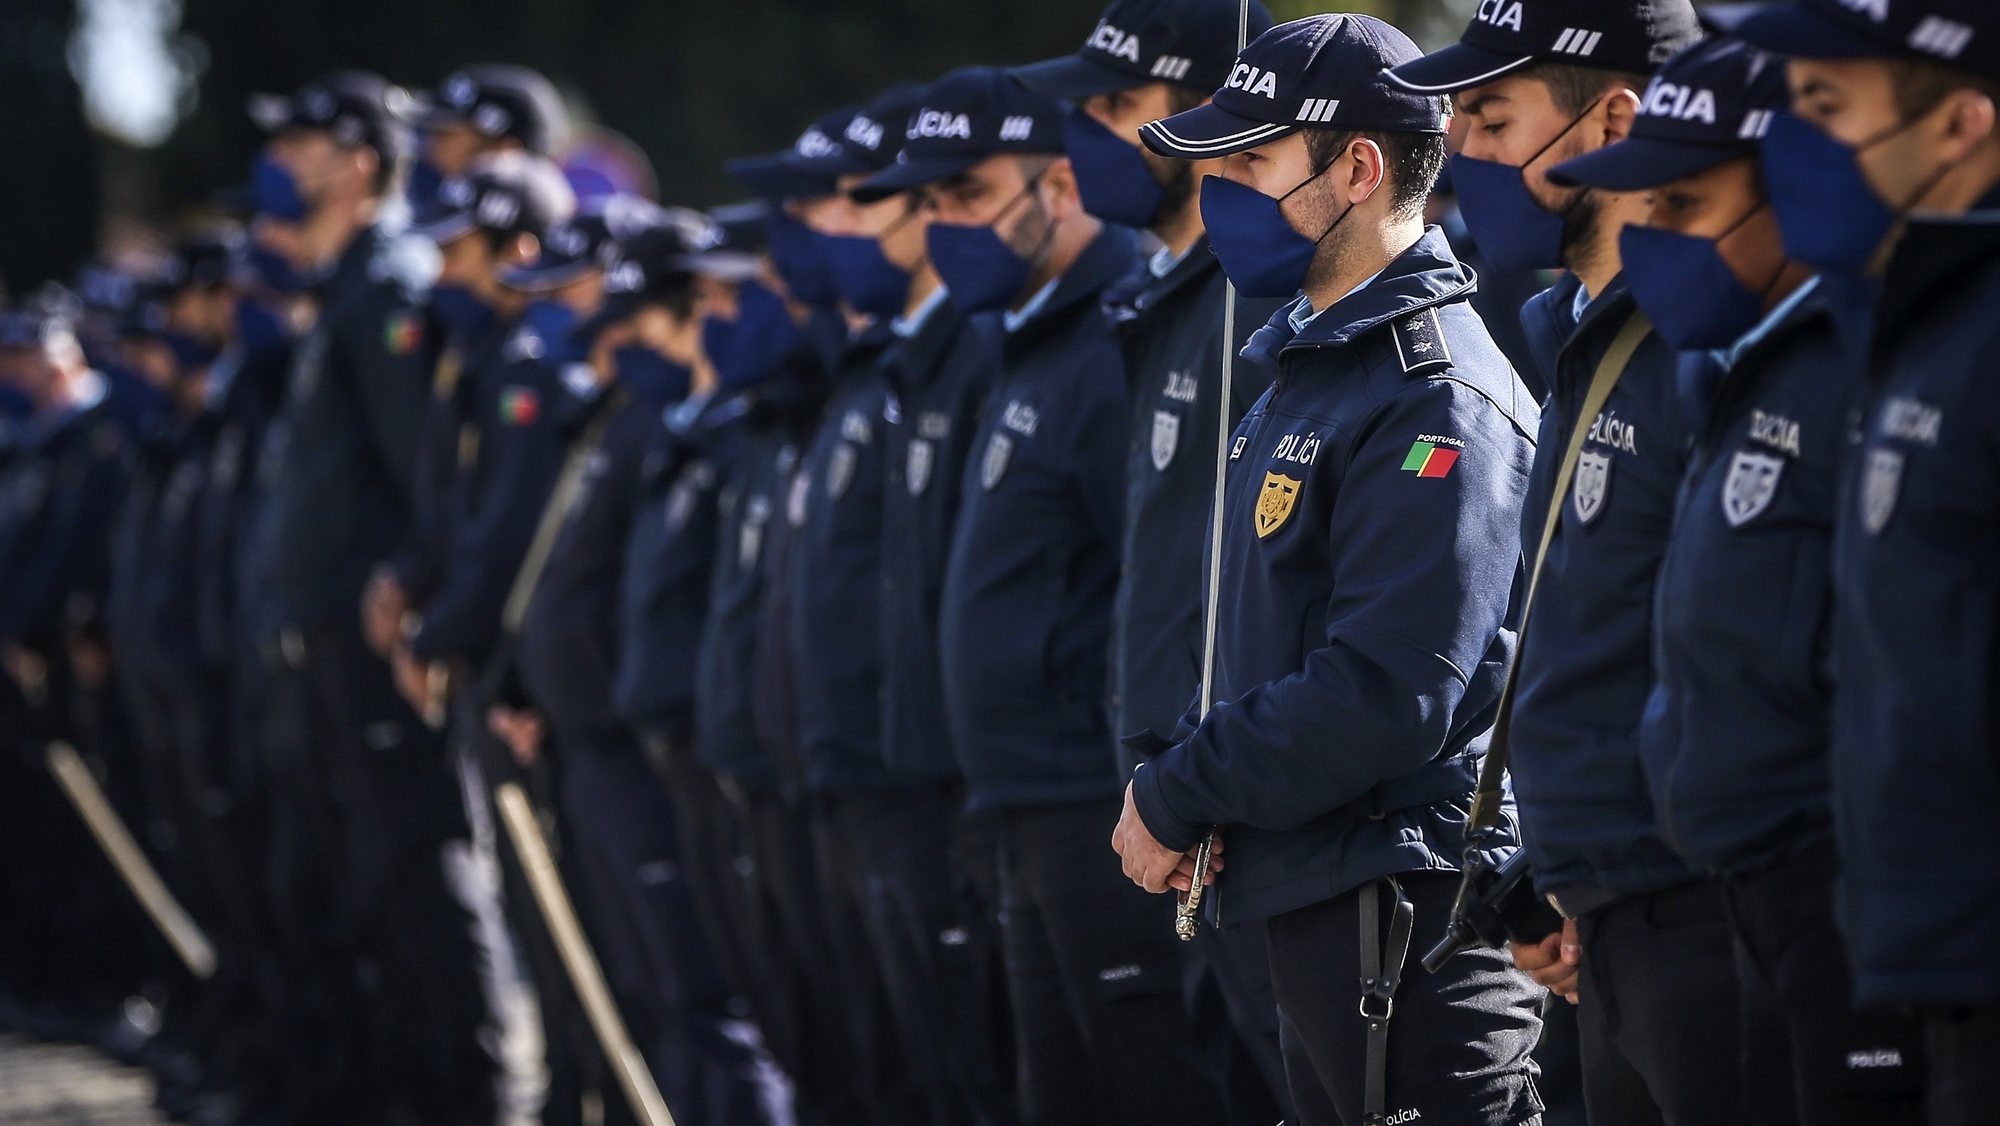 Cerimónia comemorativa do 154.º aniversário do Comando Metropolitano de Lisboa da Polícia de Segurança Pública (PSP), no Palácio da Ajuda, em Lisboa, 16 de novembro de 2021. RODRIGO ANTUNES/LUSA